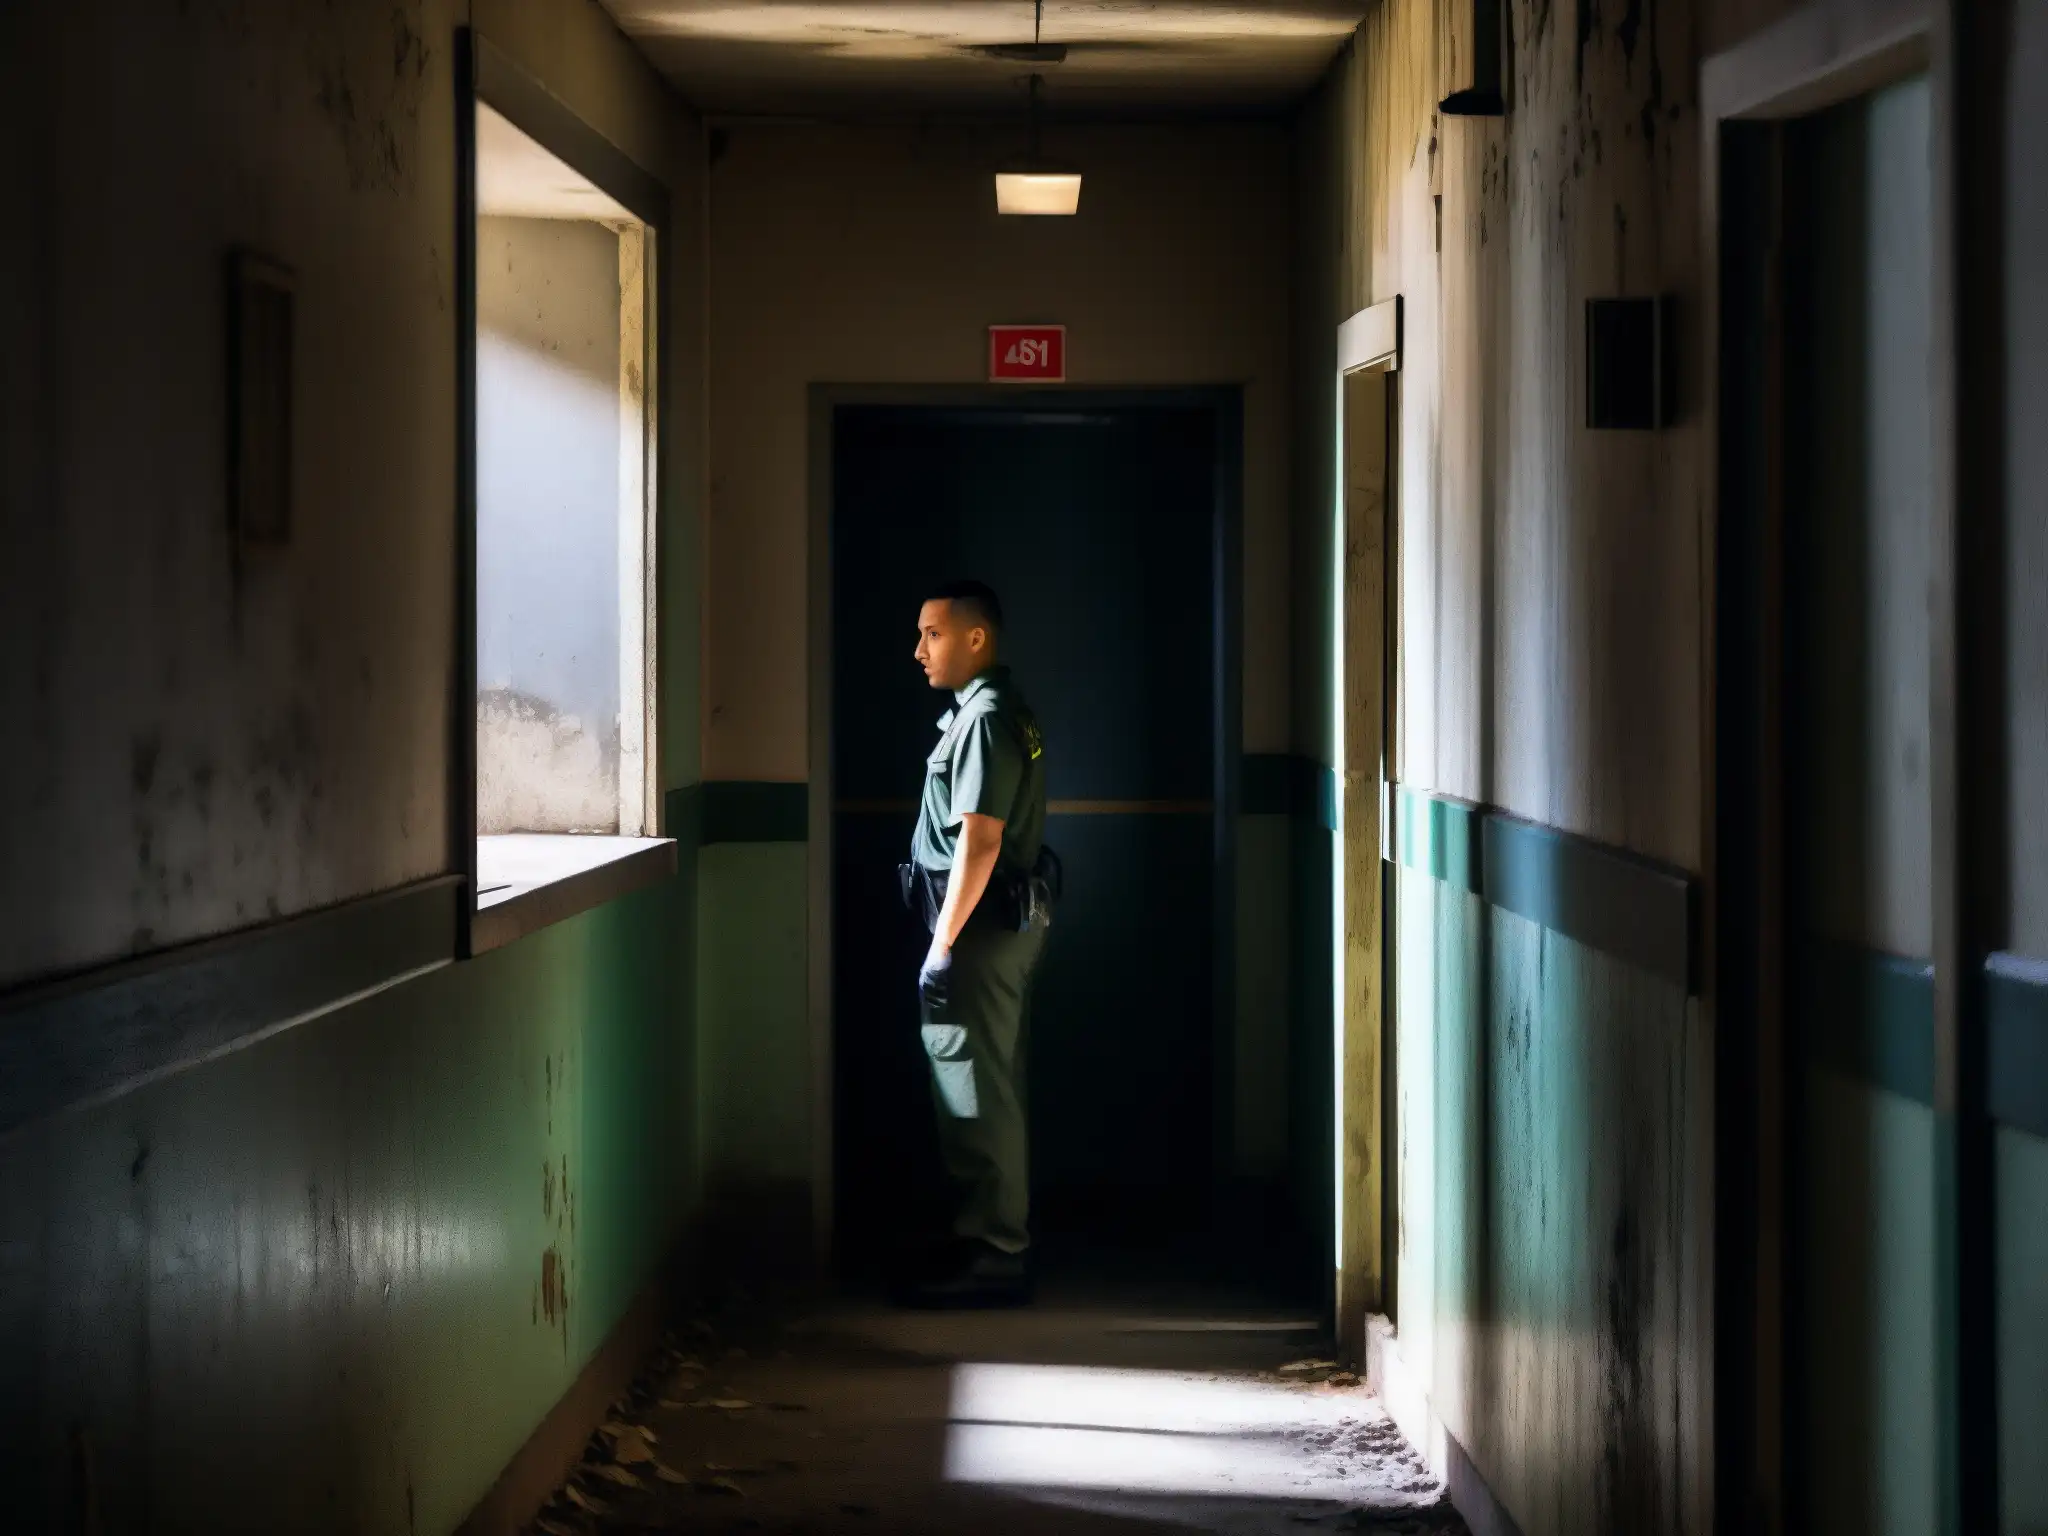 Un guardia de seguridad fantasmal vigila en un pasillo abandonado con luz tenue y pintura descascarada